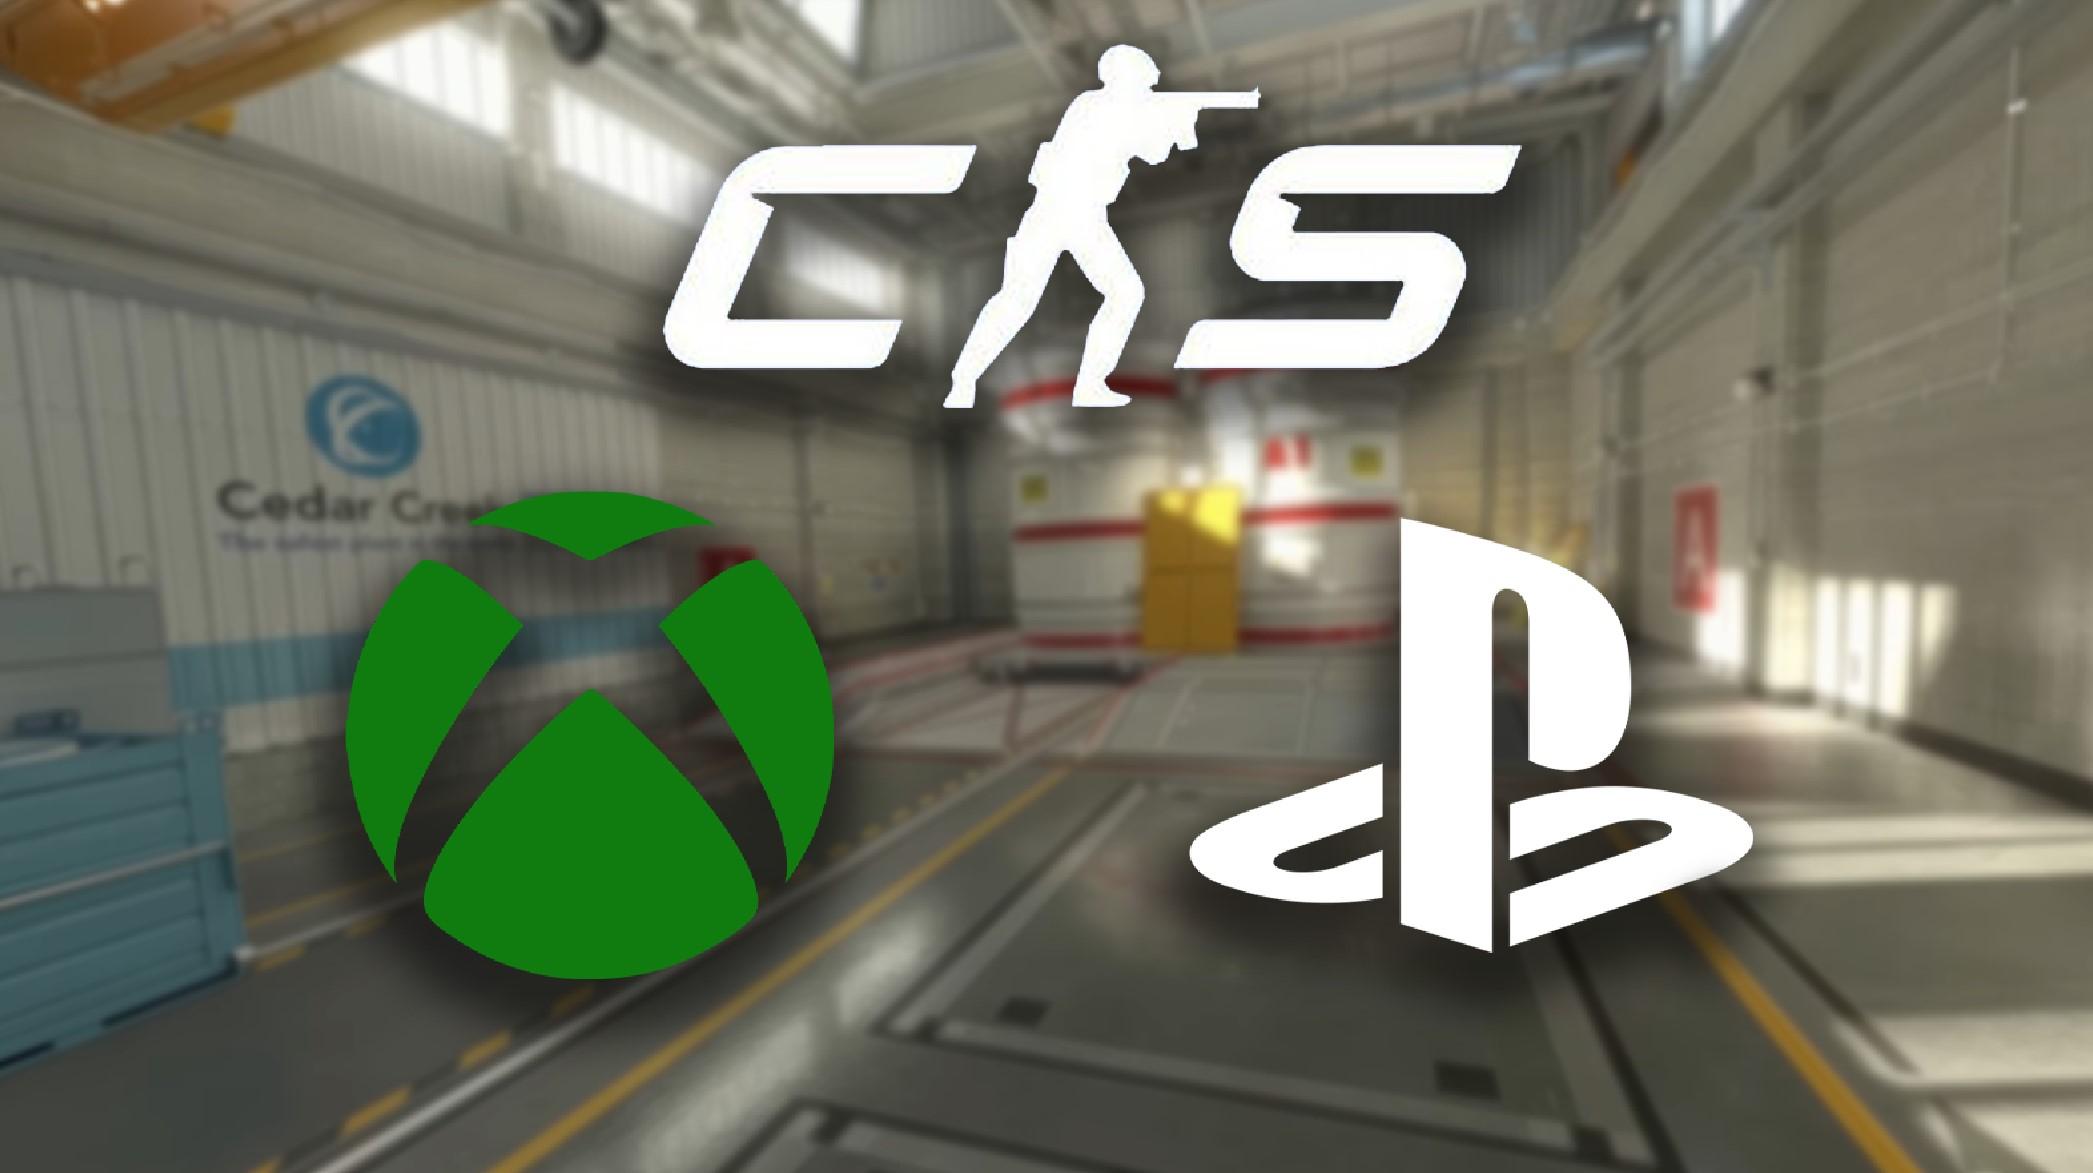 Counter-Strike 2 console logos